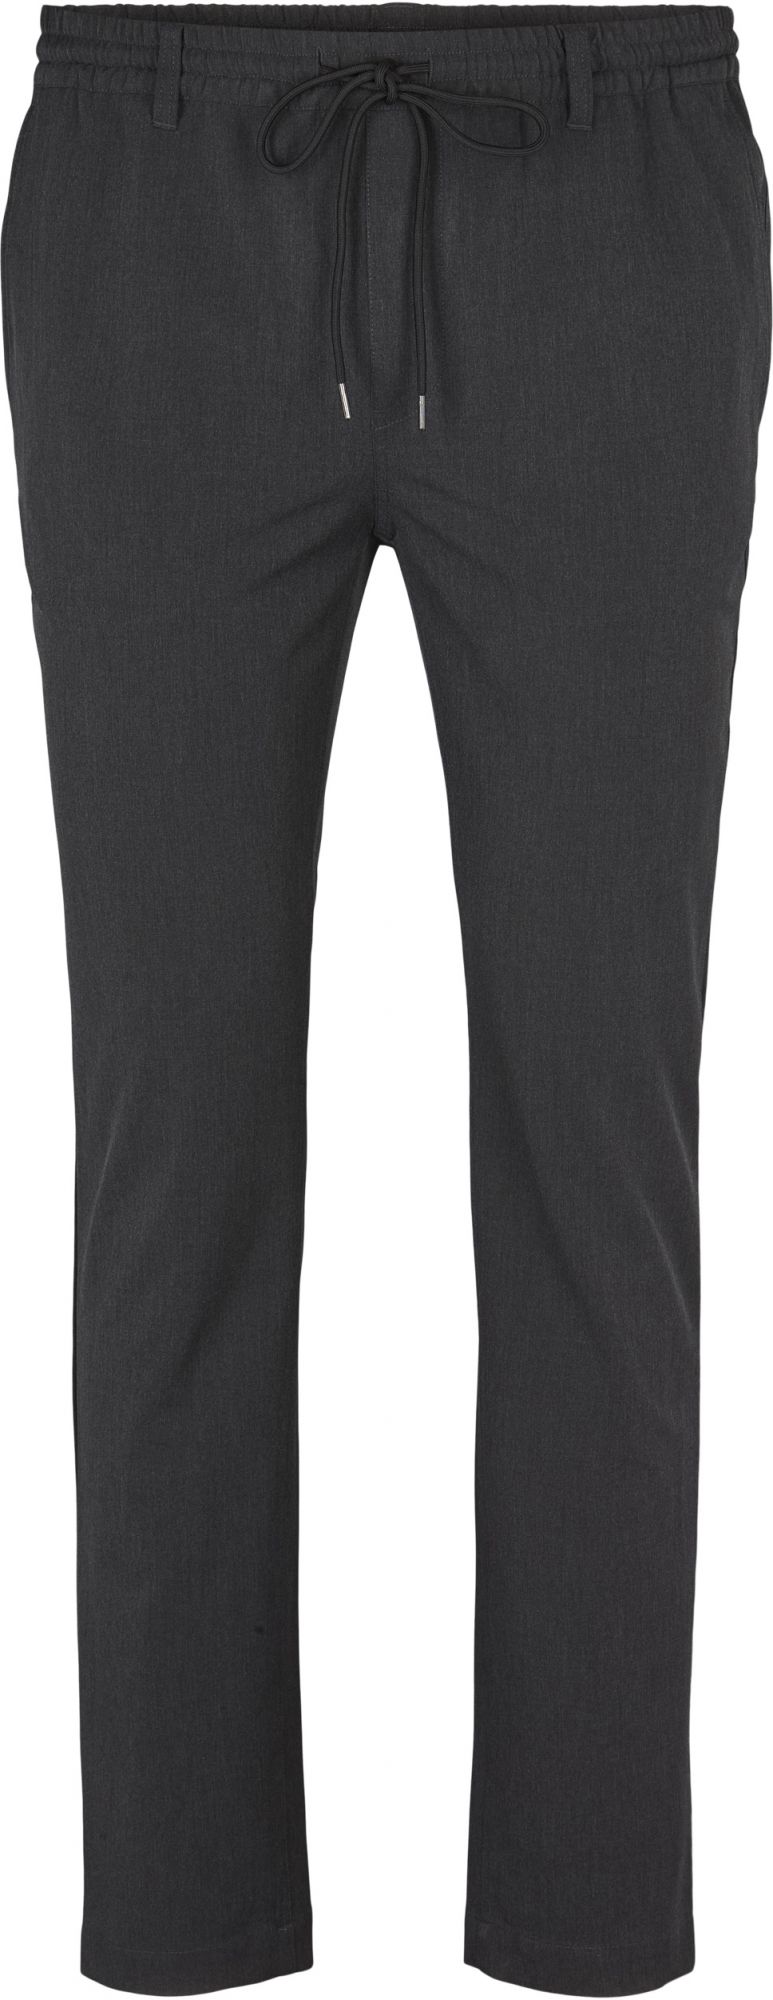 Pantalon Stretch Taille Elastiquée Anthracite All Size du 2XL au 8XL